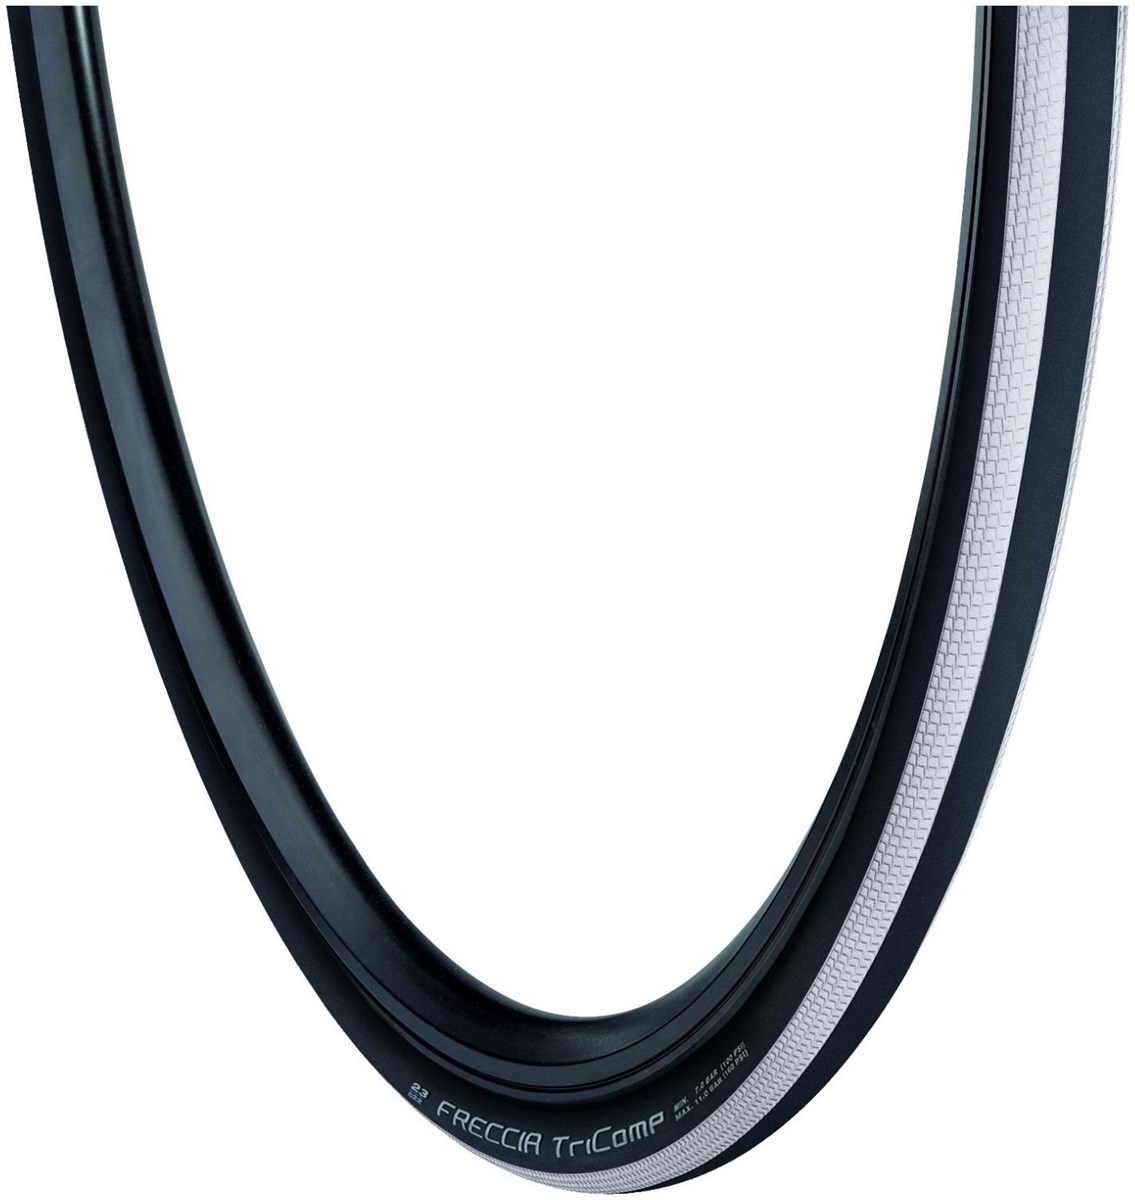 Vredestein Freccia 700c Folding Road Tyre